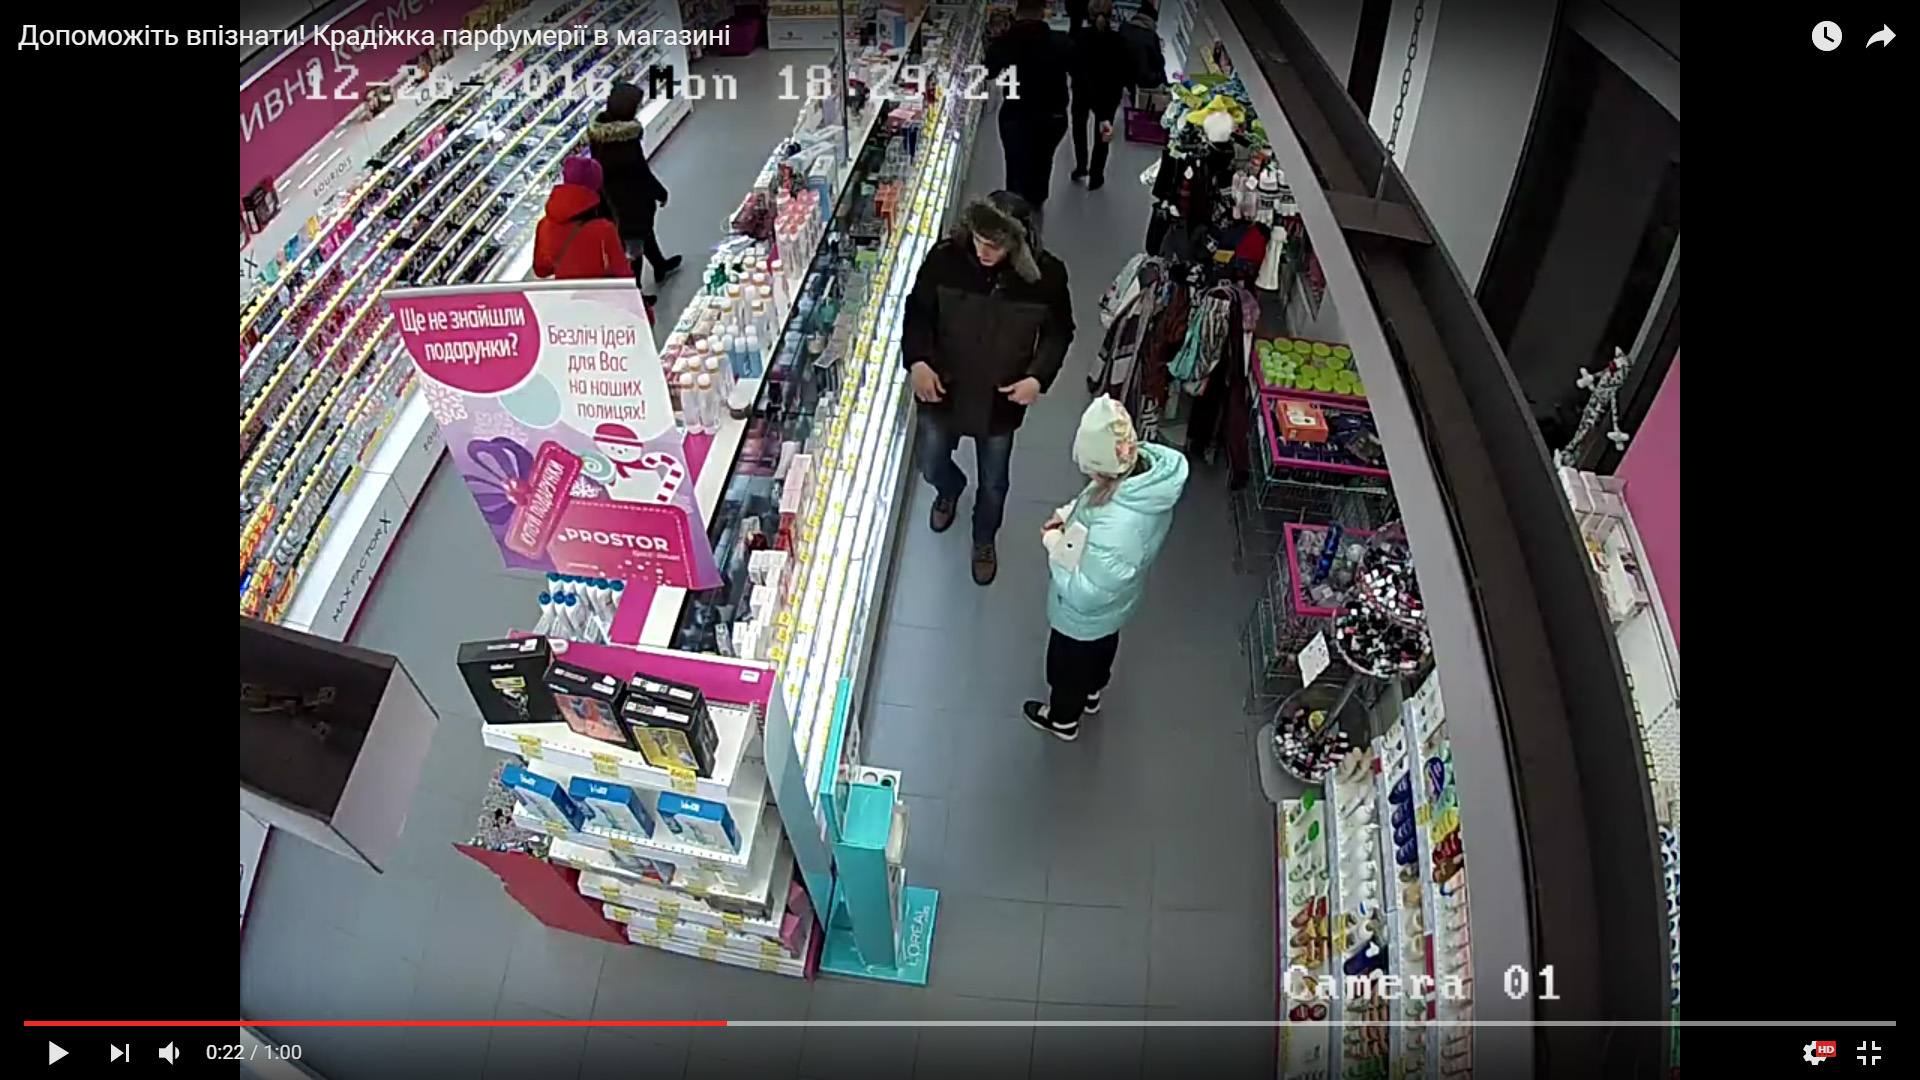 Совісті у нього взагалі немає: прихована камера зняла непристойну поведінку чоловіка в супермаркеті (ВІДЕО) Мережа обурена тим, що він зробив